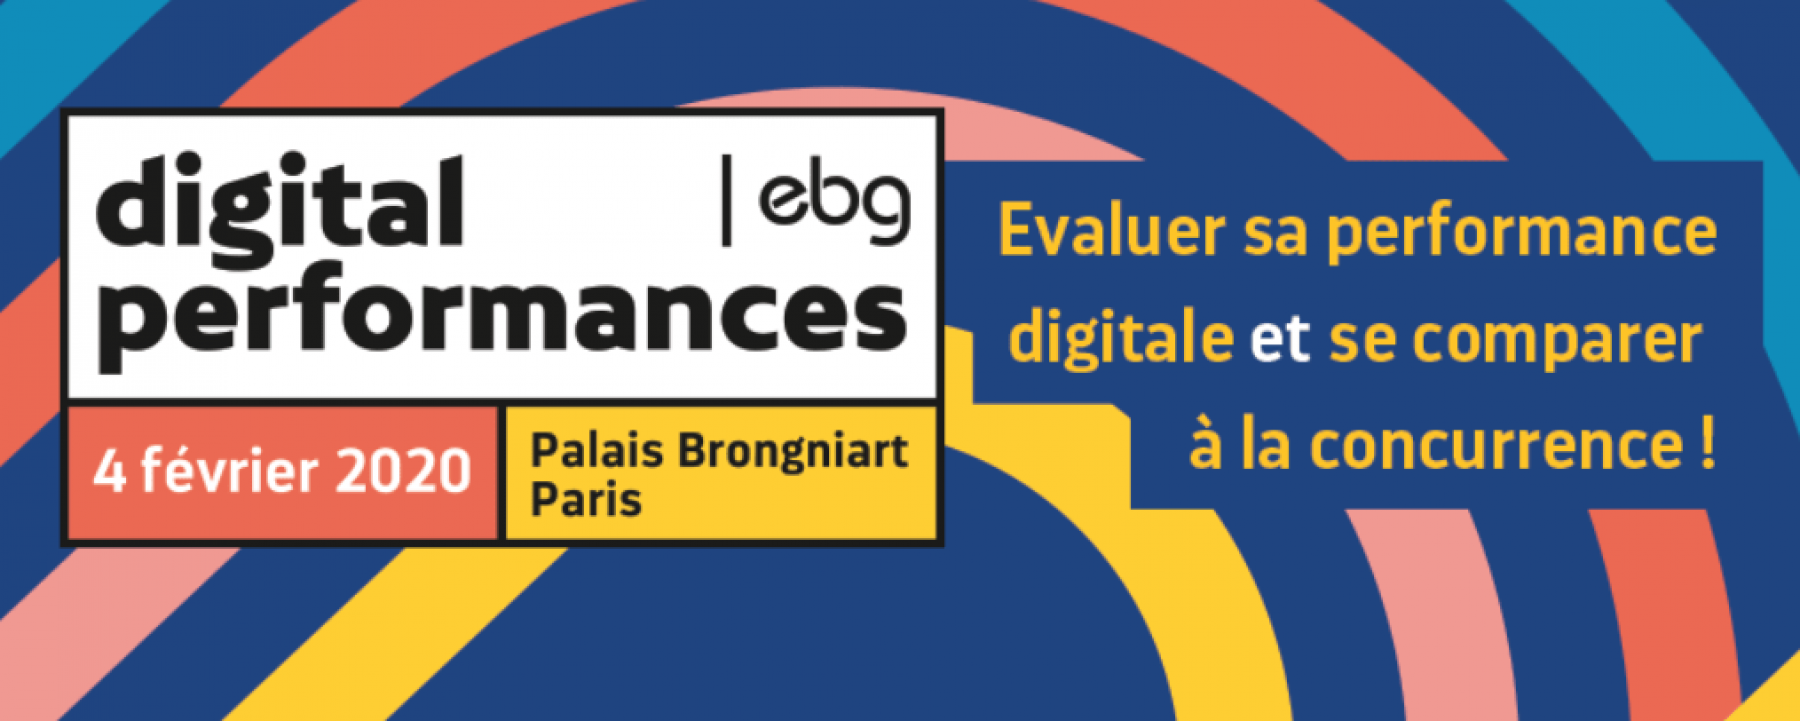 Événement Digital Performances, le 4 février 2020, organisé par EBG 